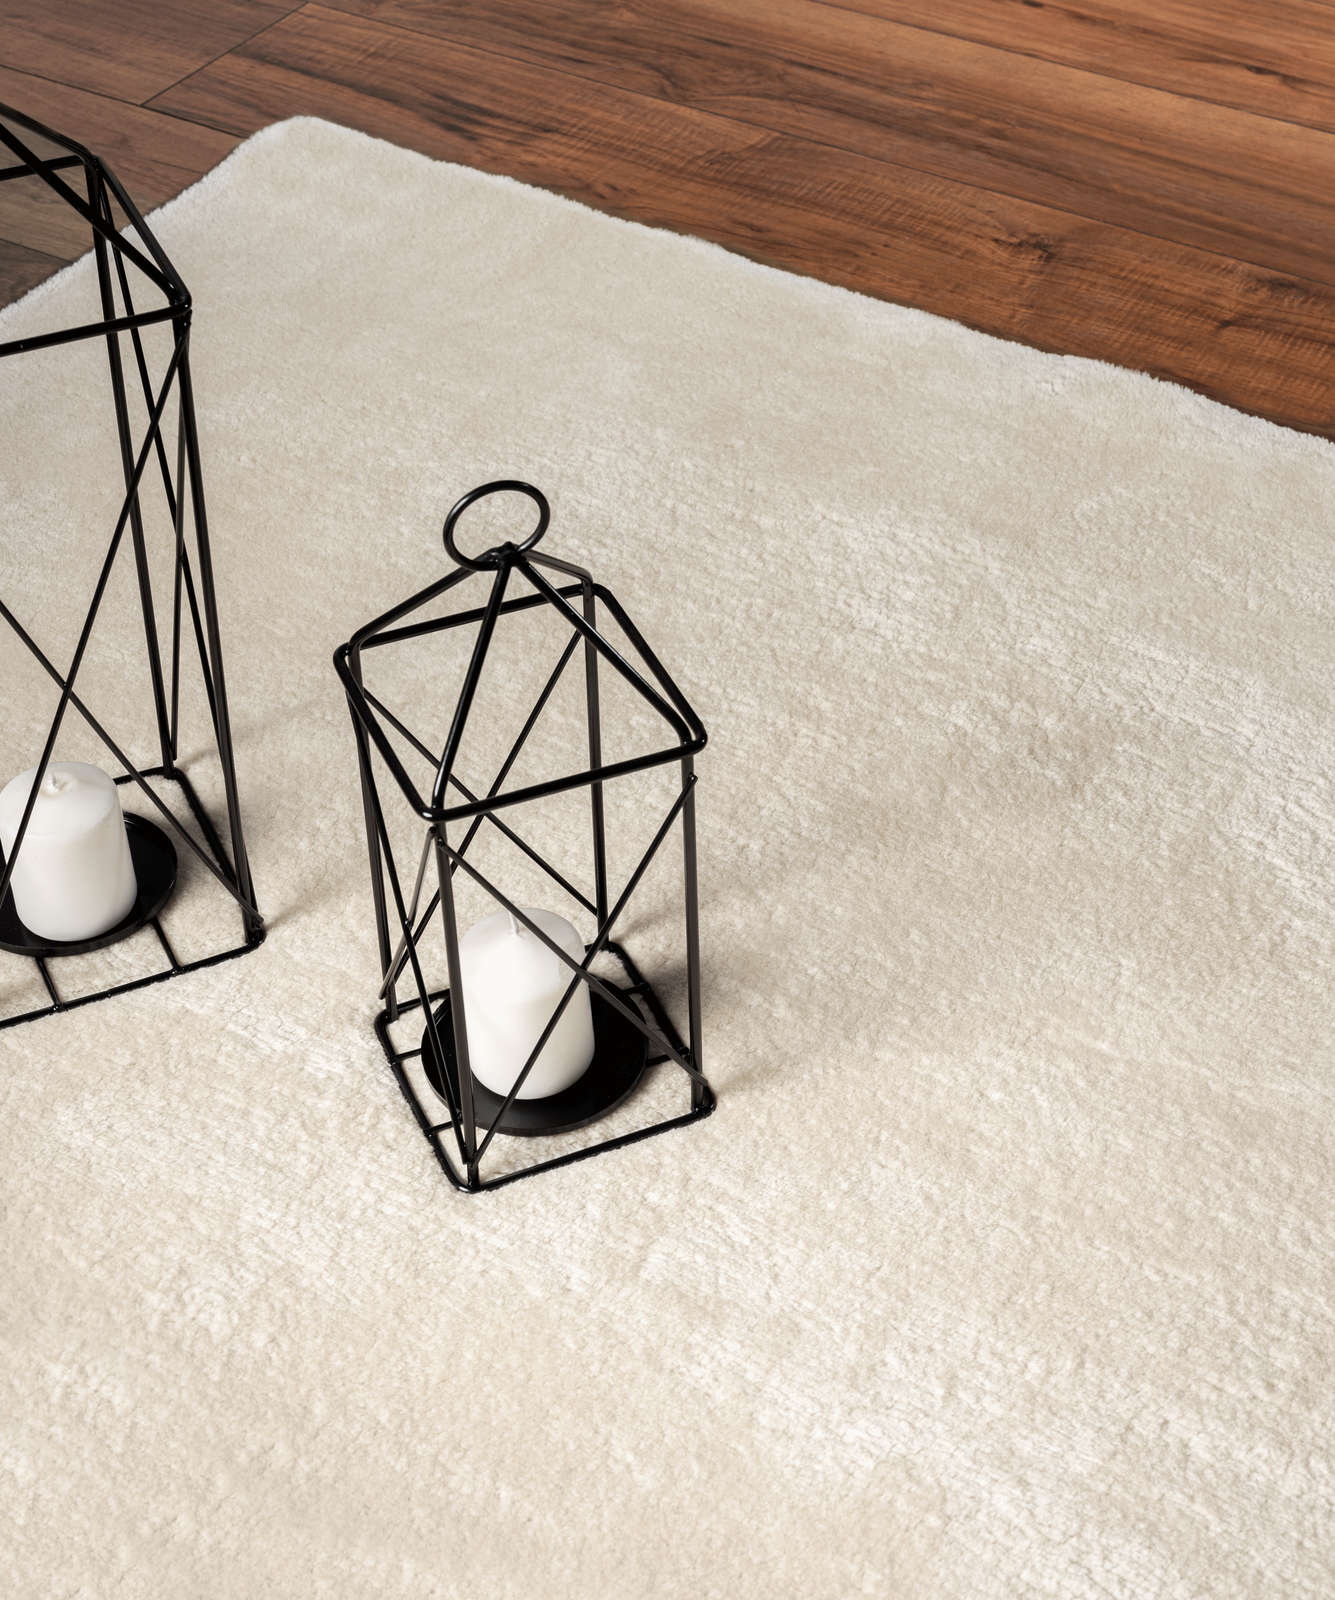             Soft high pile carpet in beige - 110 x 60 cm
        